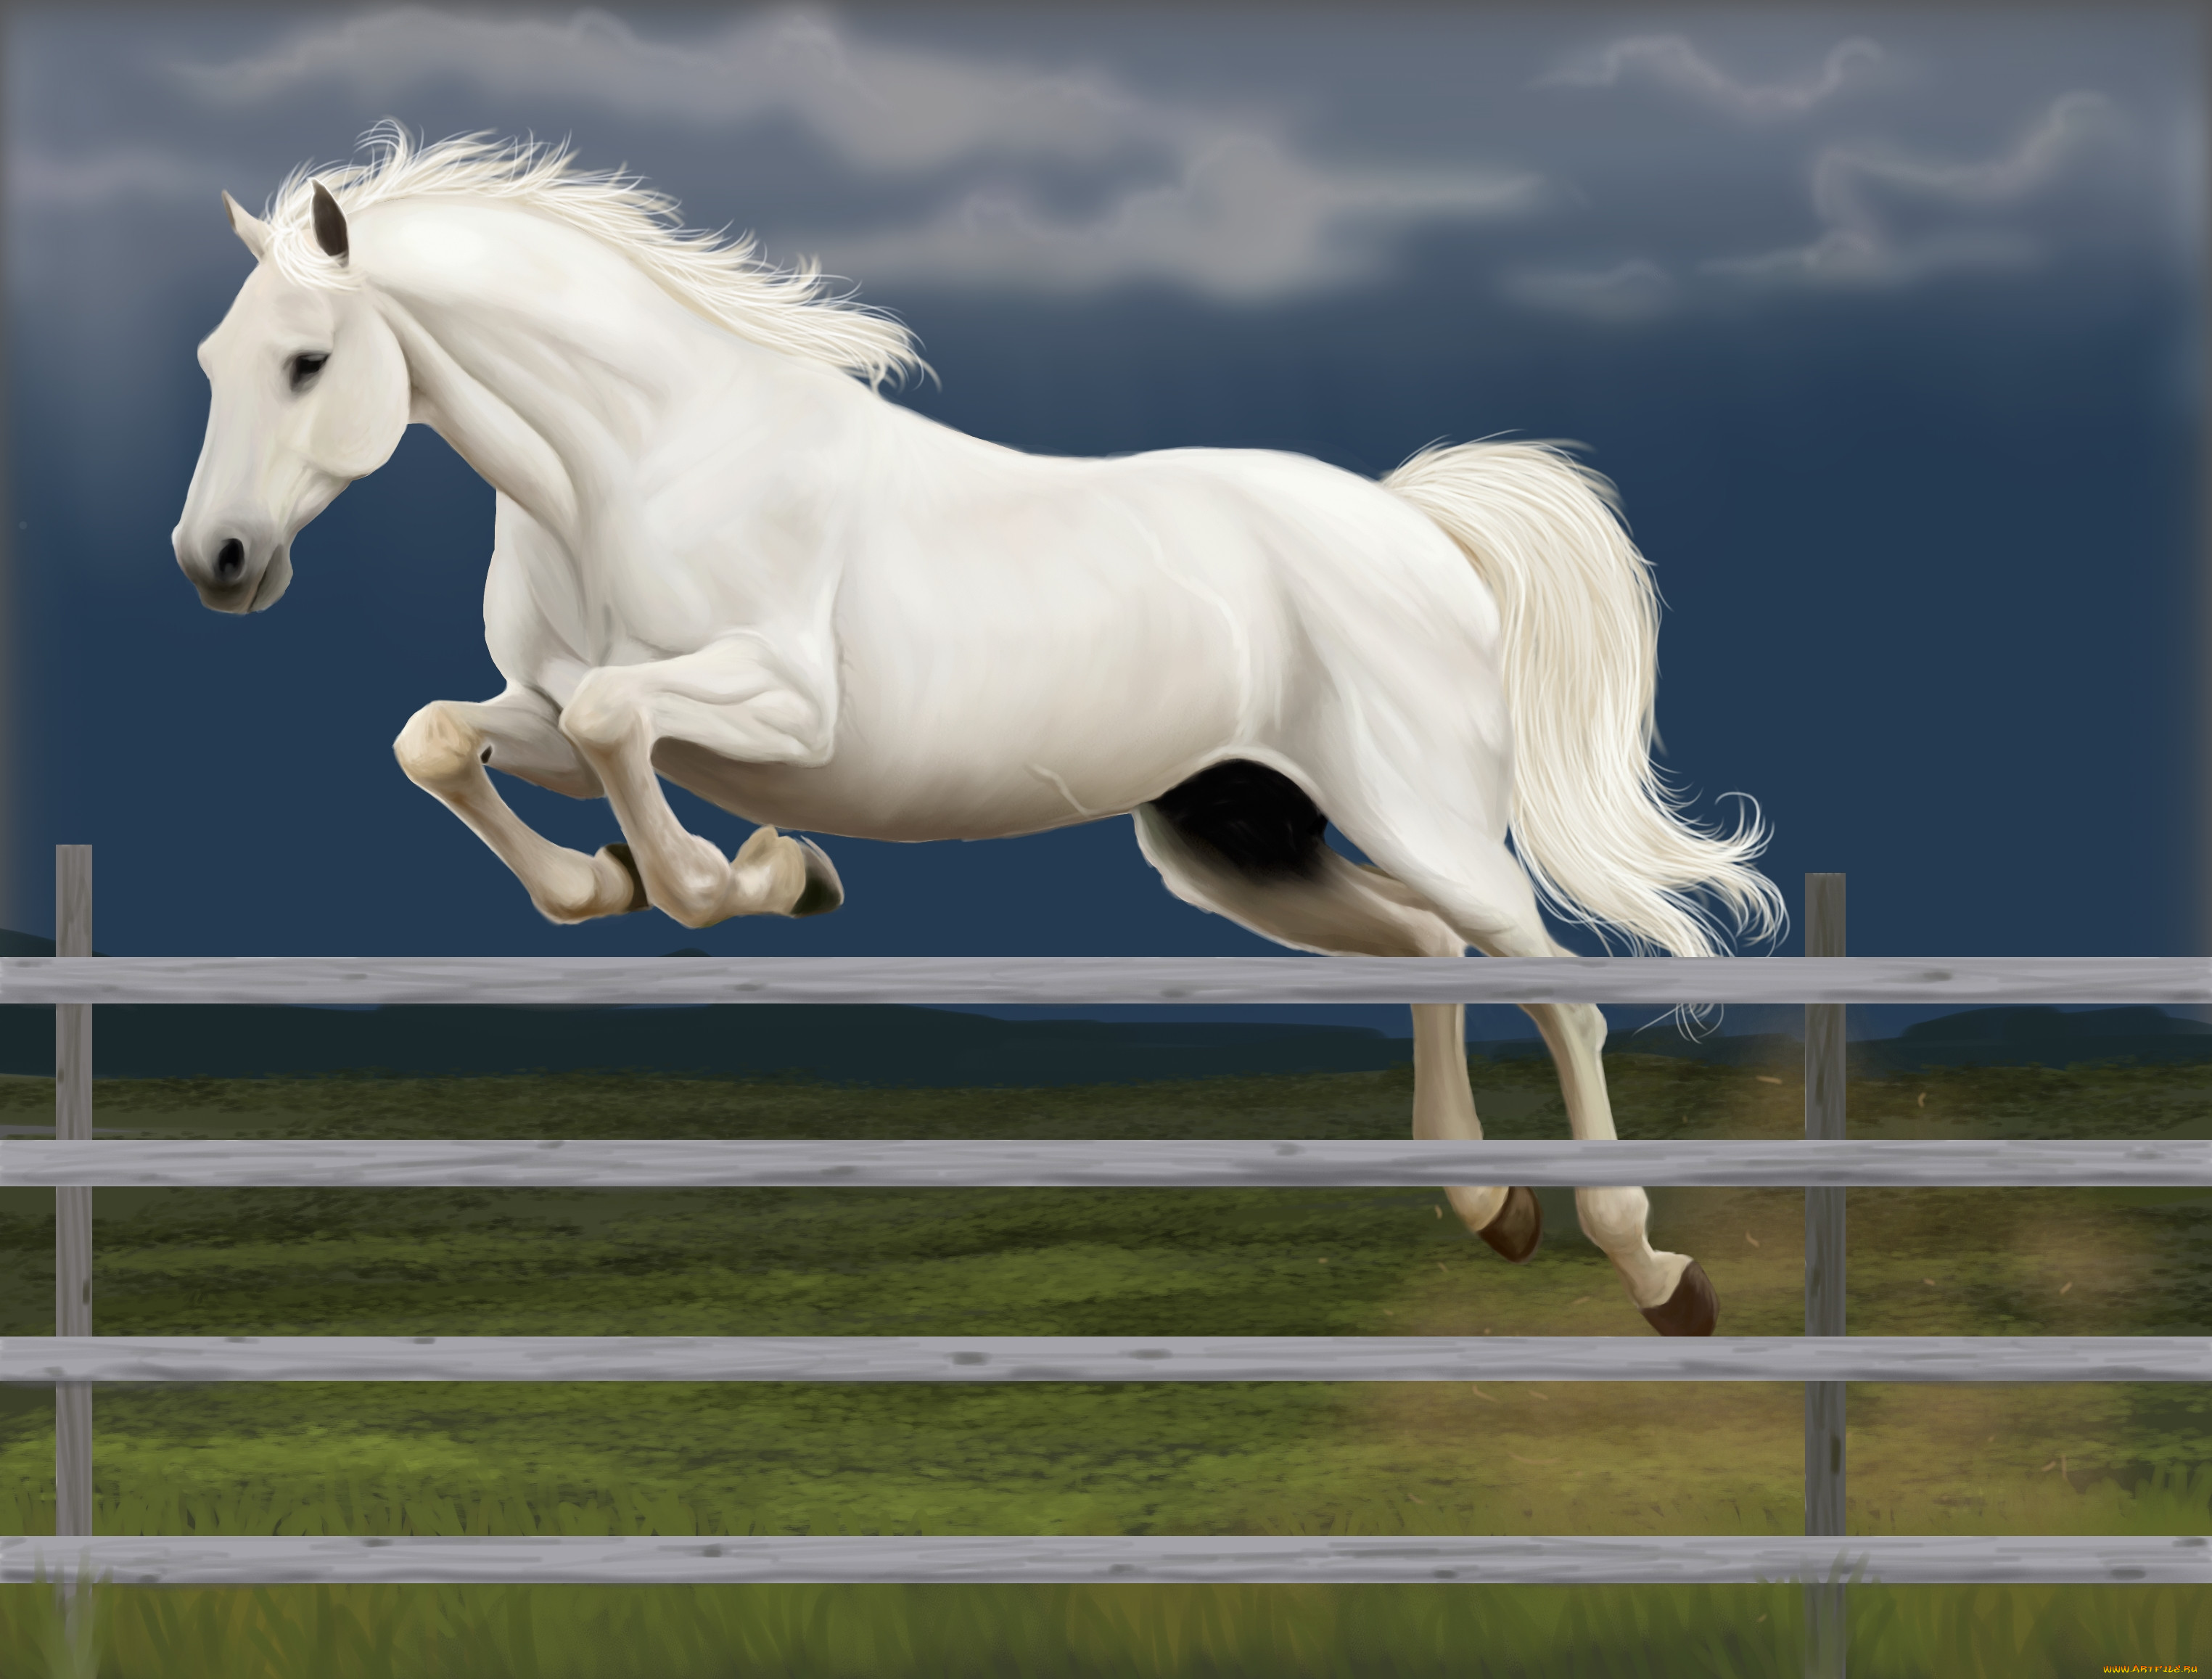 Сайт horse. Лошади. Лошадь скачет. Белый конь. Лошадь в прыжке.